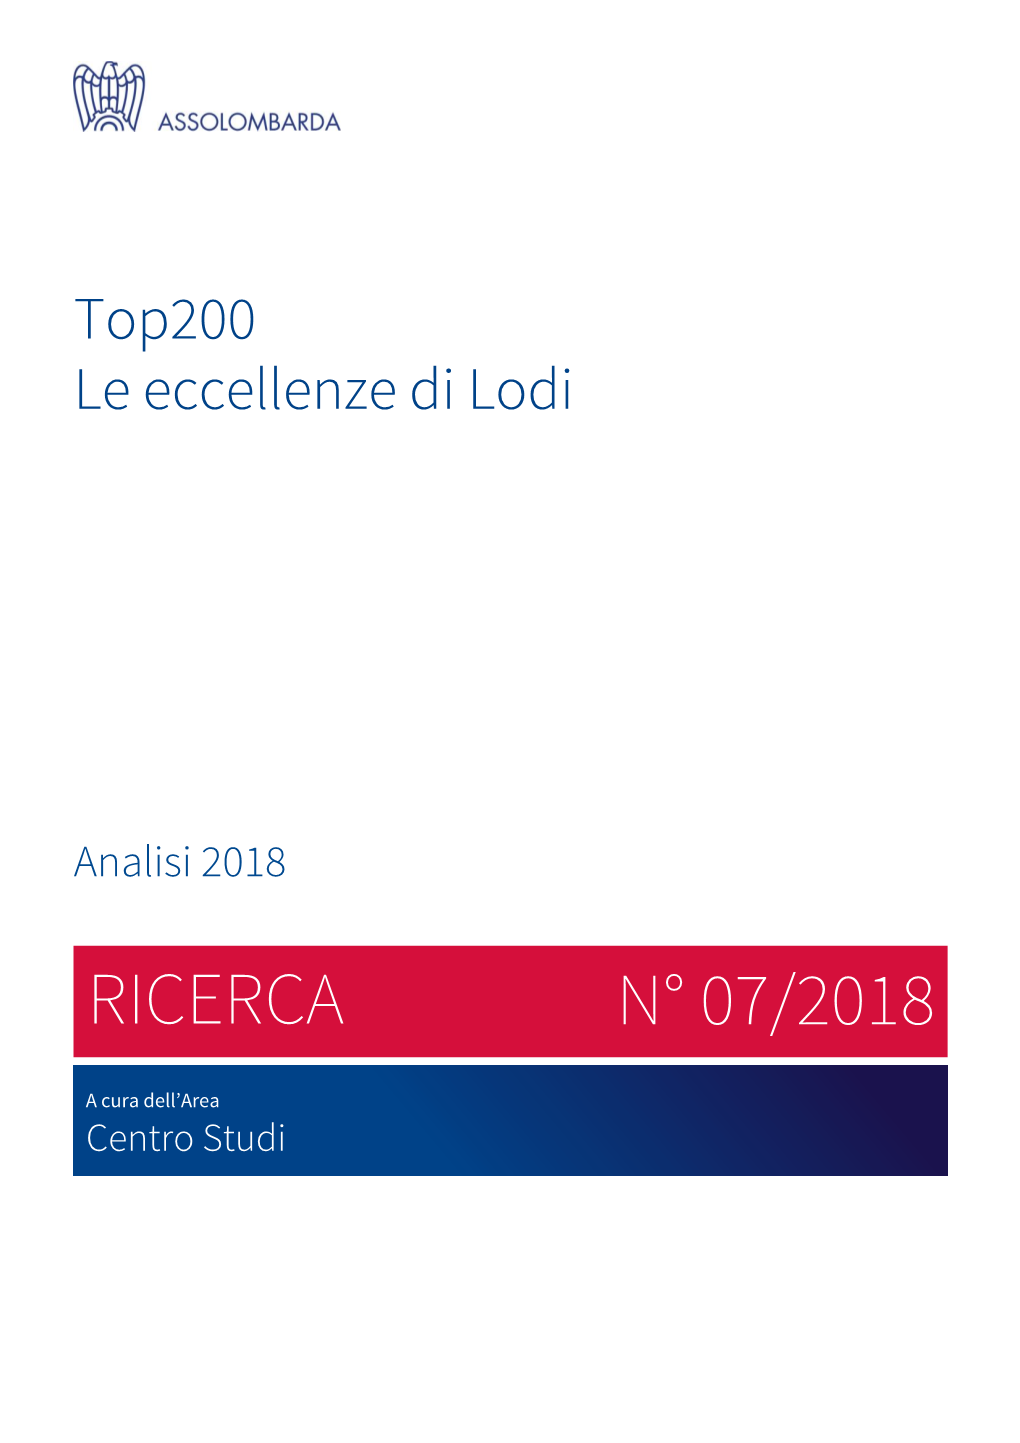 Top 200 Lodi 2018